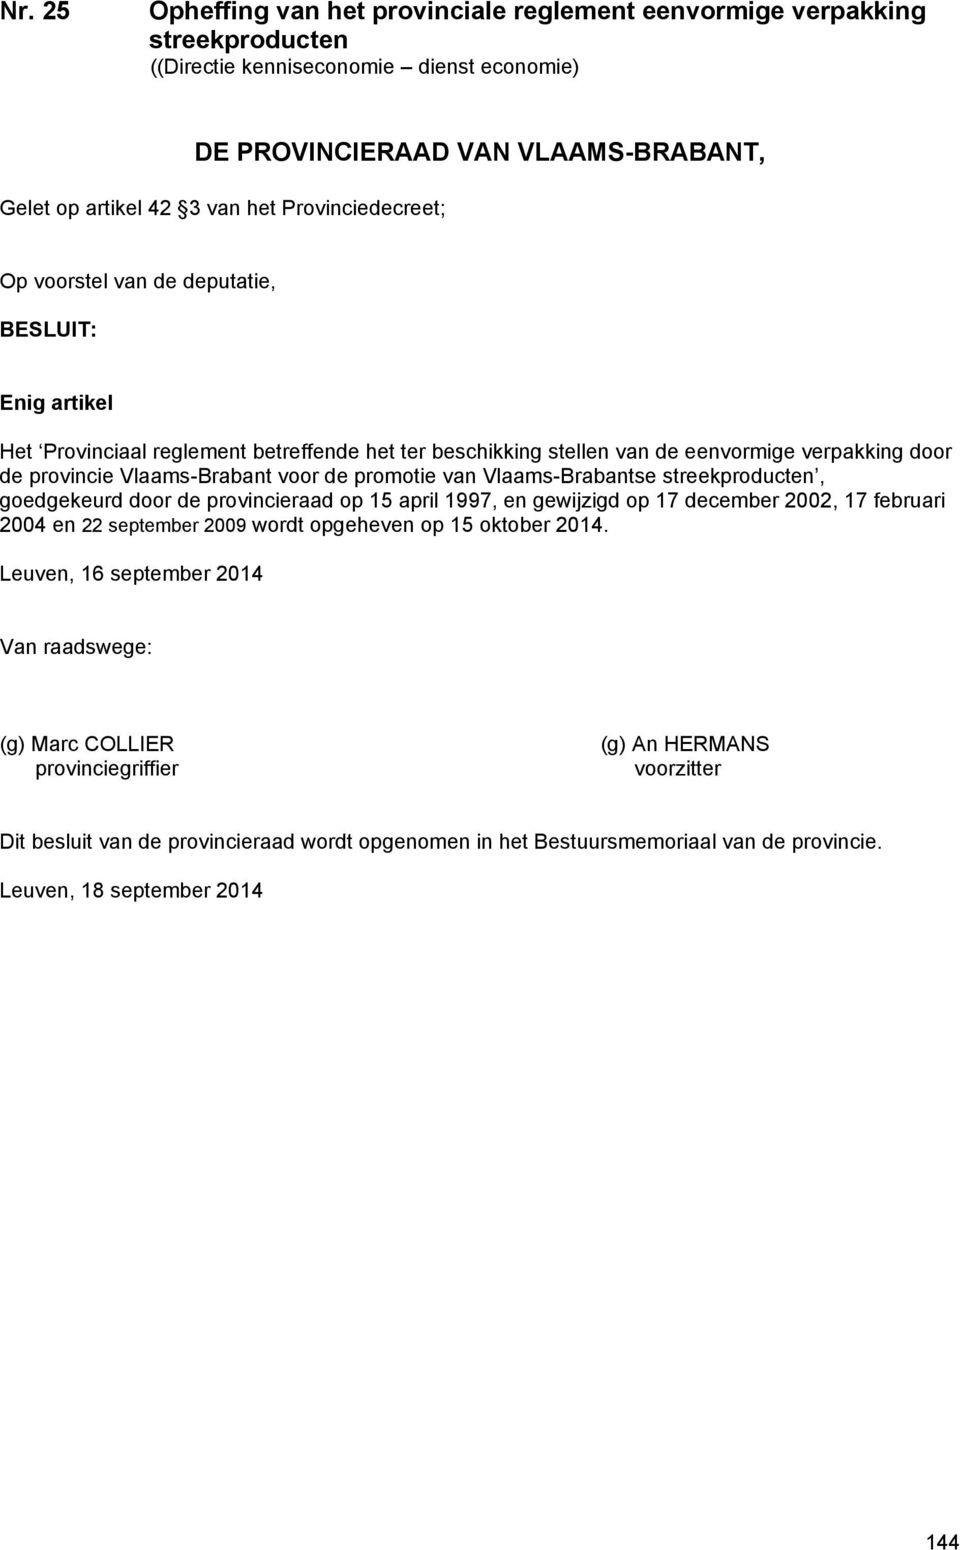 voor de promotie van Vlaams-Brabantse streekproducten, goedgekeurd door de provincieraad op 15 april 1997, en gewijzigd op 17 december 2002, 17 februari 2004 en 22 september 2009 wordt opgeheven op